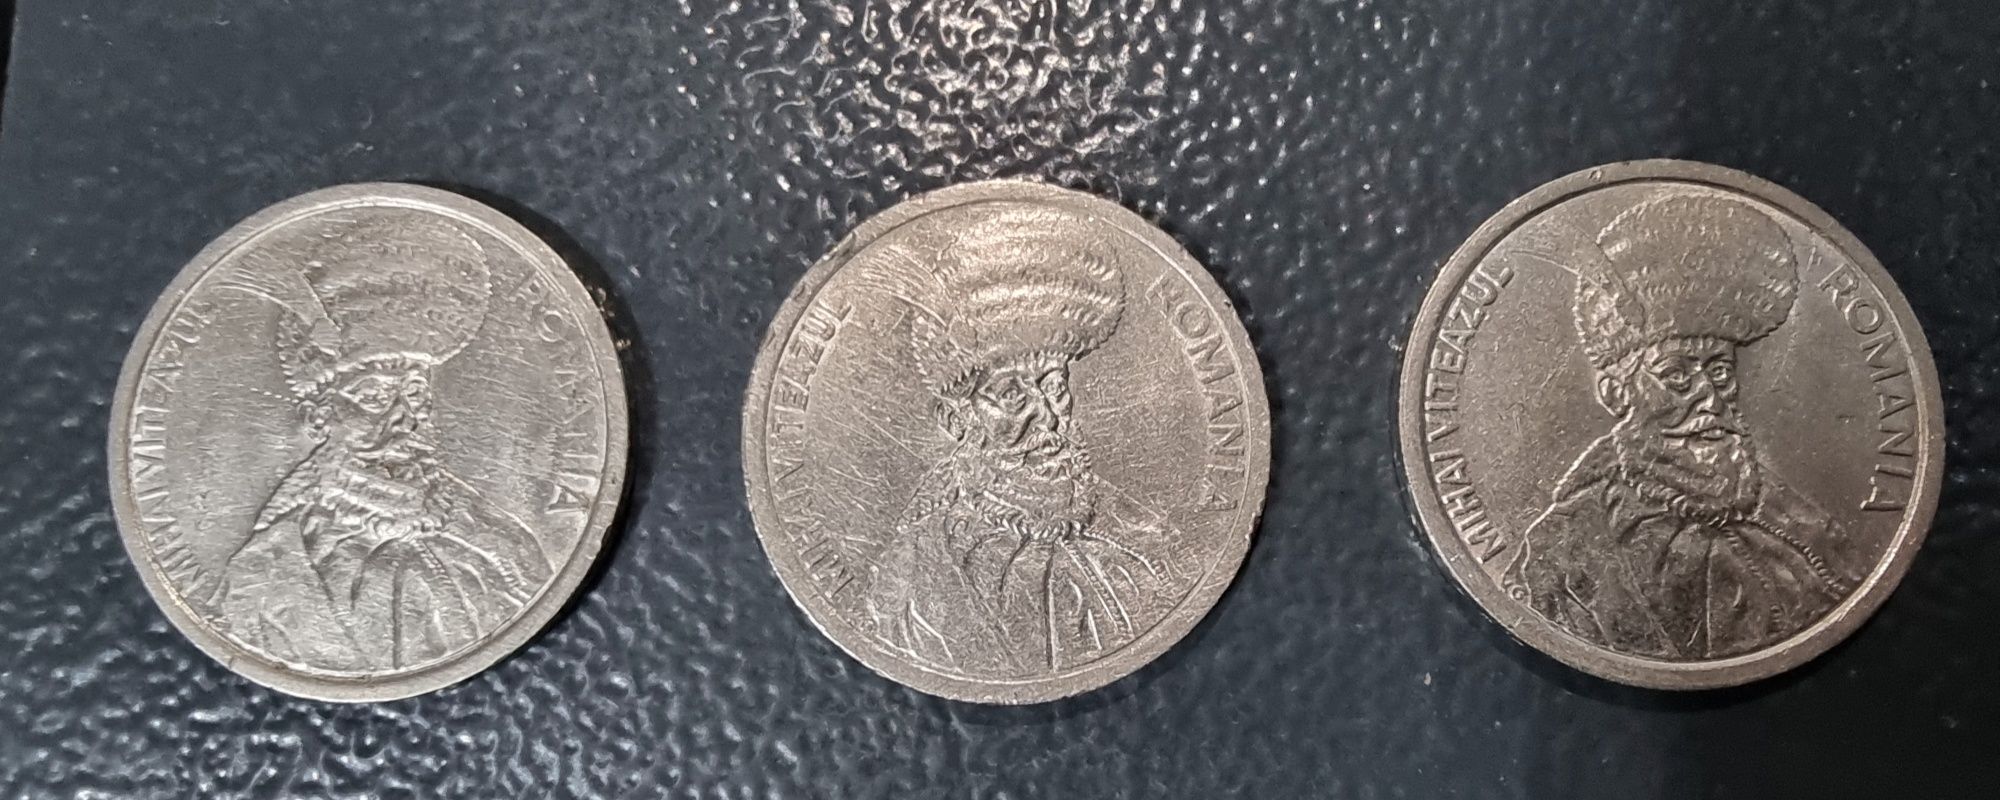 Monede 100 Lei cu Mihai Viteazul (1992,1993,19996)